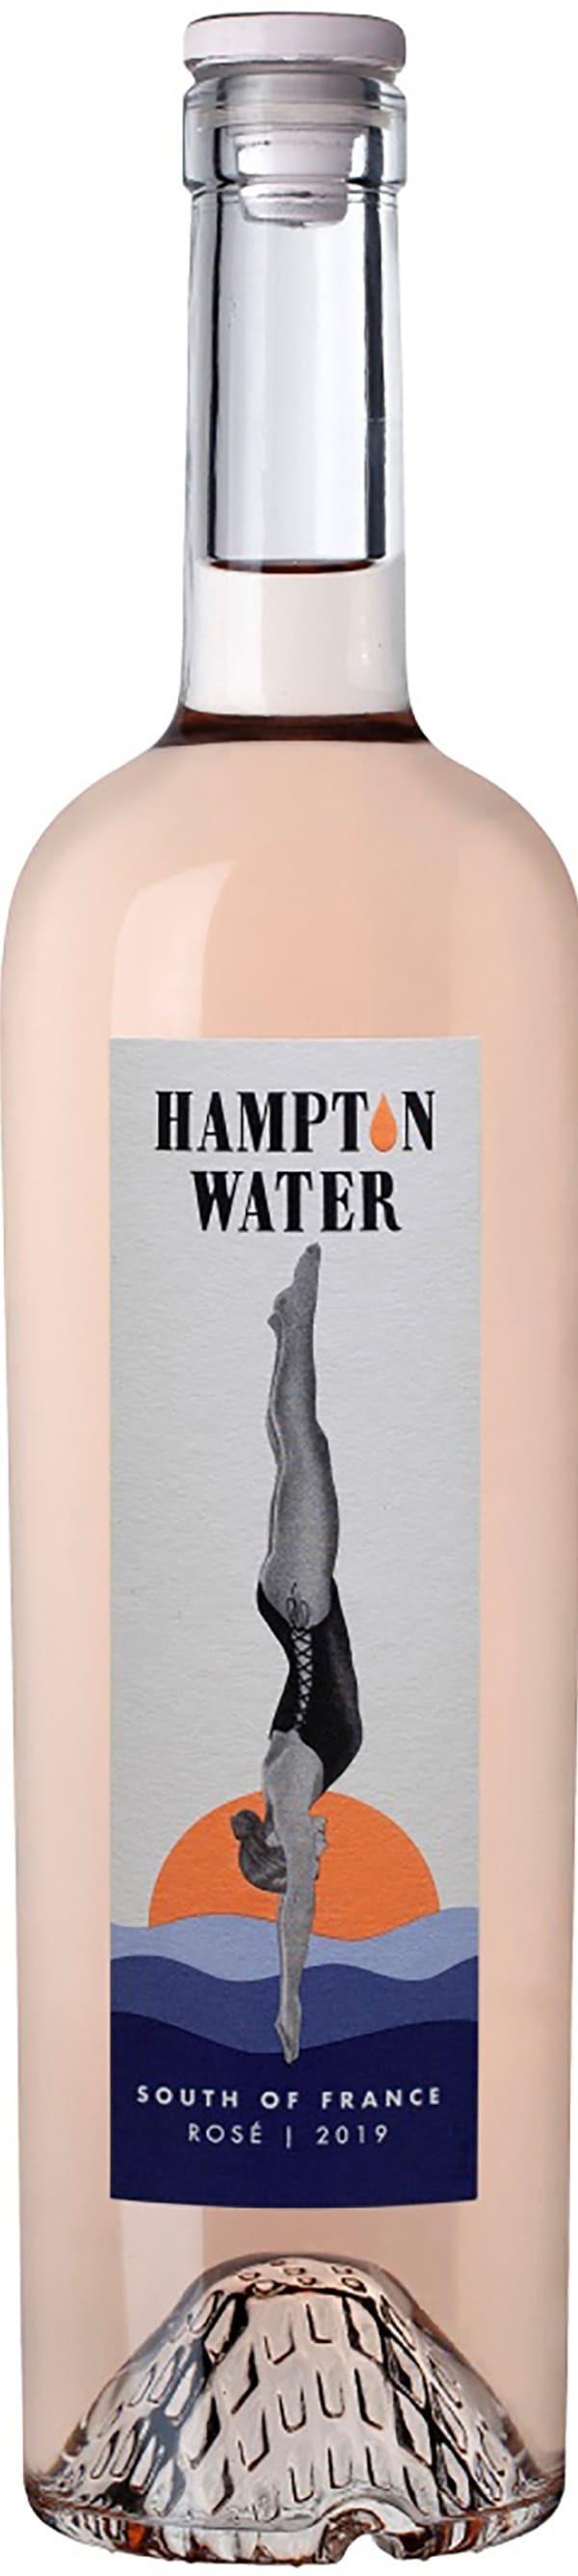 Hampton Water Rosé 2019